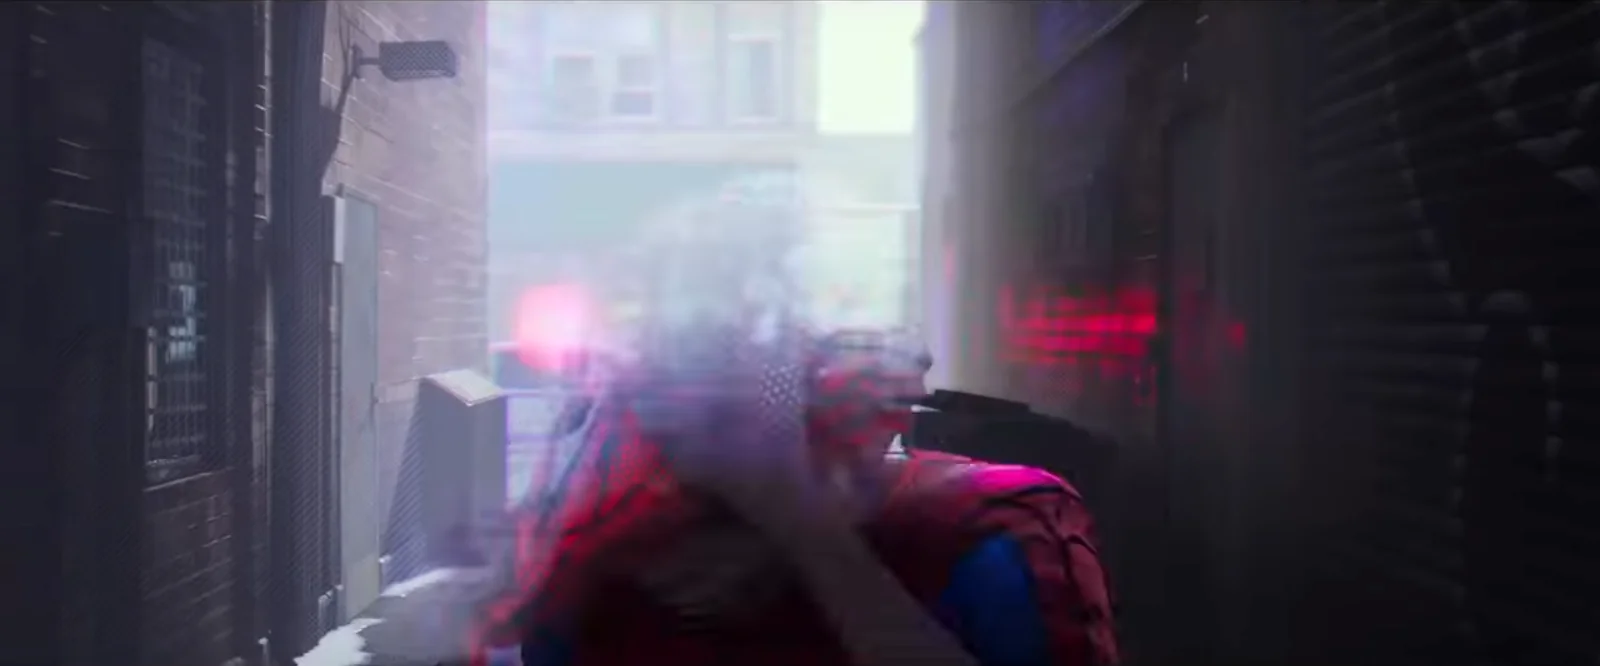 Что показали в трейлере Spider-Man: Into the Spider-Verse. Зеленый гоблин, Гвен-паук и Кингпин? - фото 8